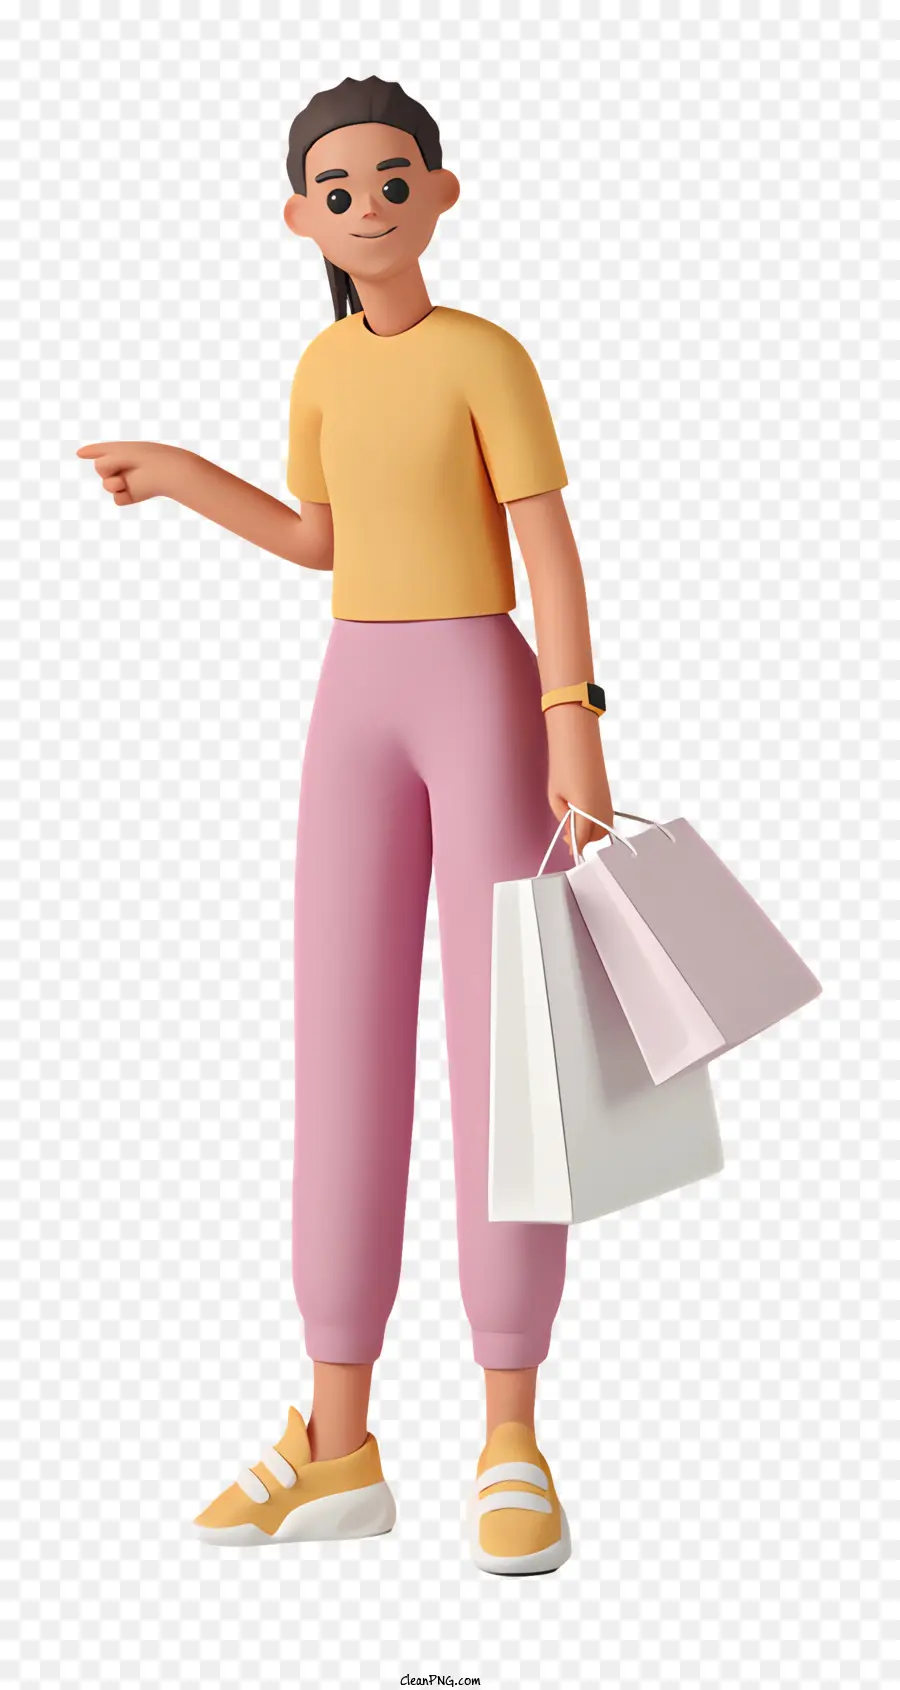 túi mua sắm - Người phụ nữ cầm túi mua sắm, chỉ trên nền đen